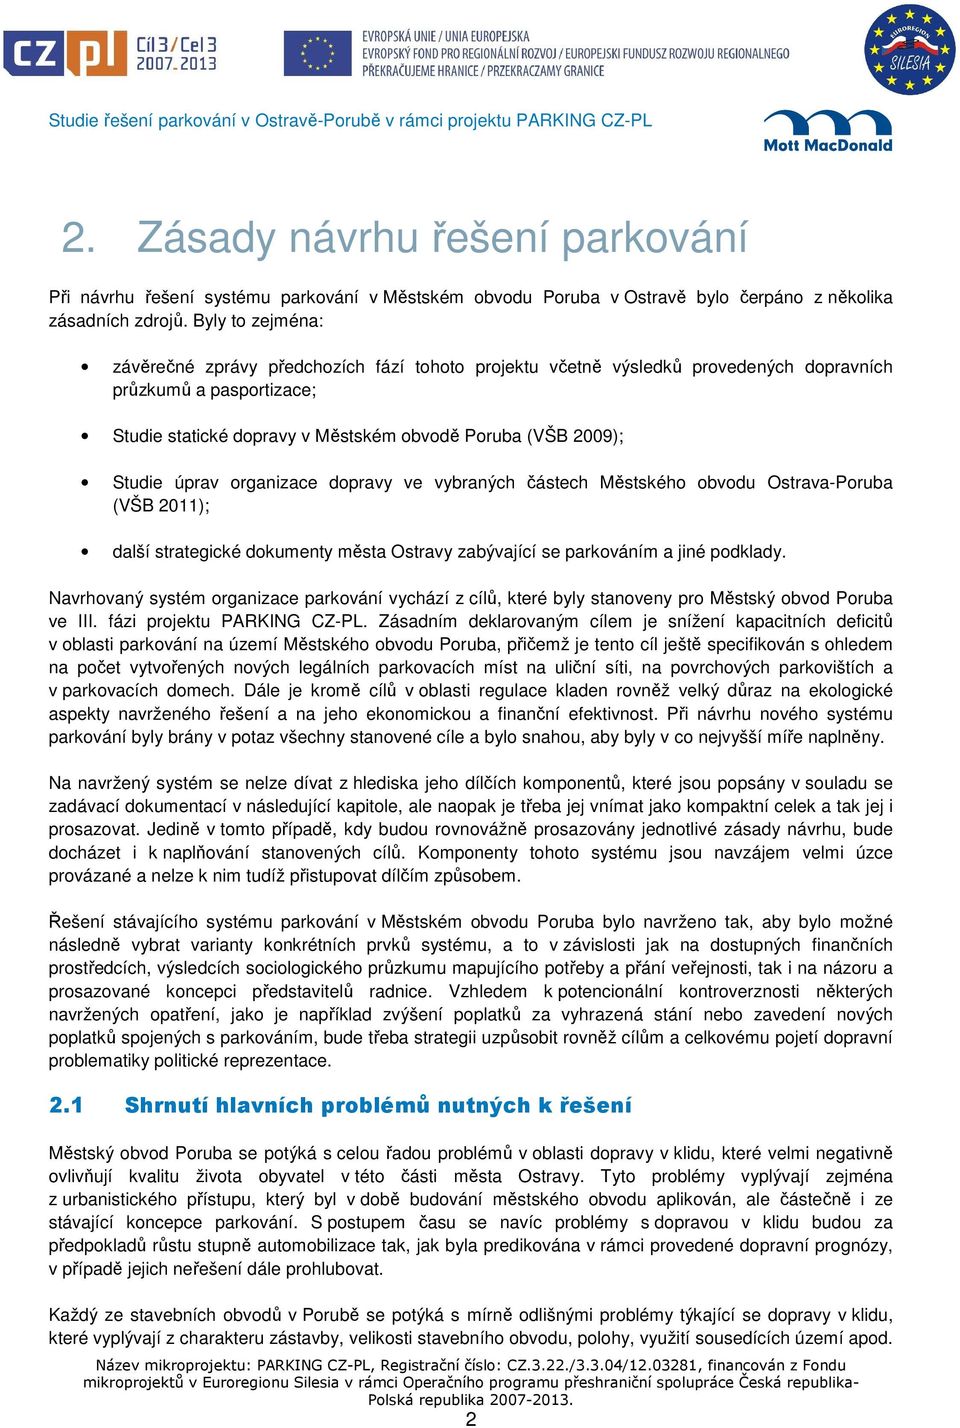 úprav organizace dopravy ve vybraných částech Městského obvodu Ostrava-Poruba (VŠB 2011); další strategické dokumenty města Ostravy zabývající se parkováním a jiné podklady.